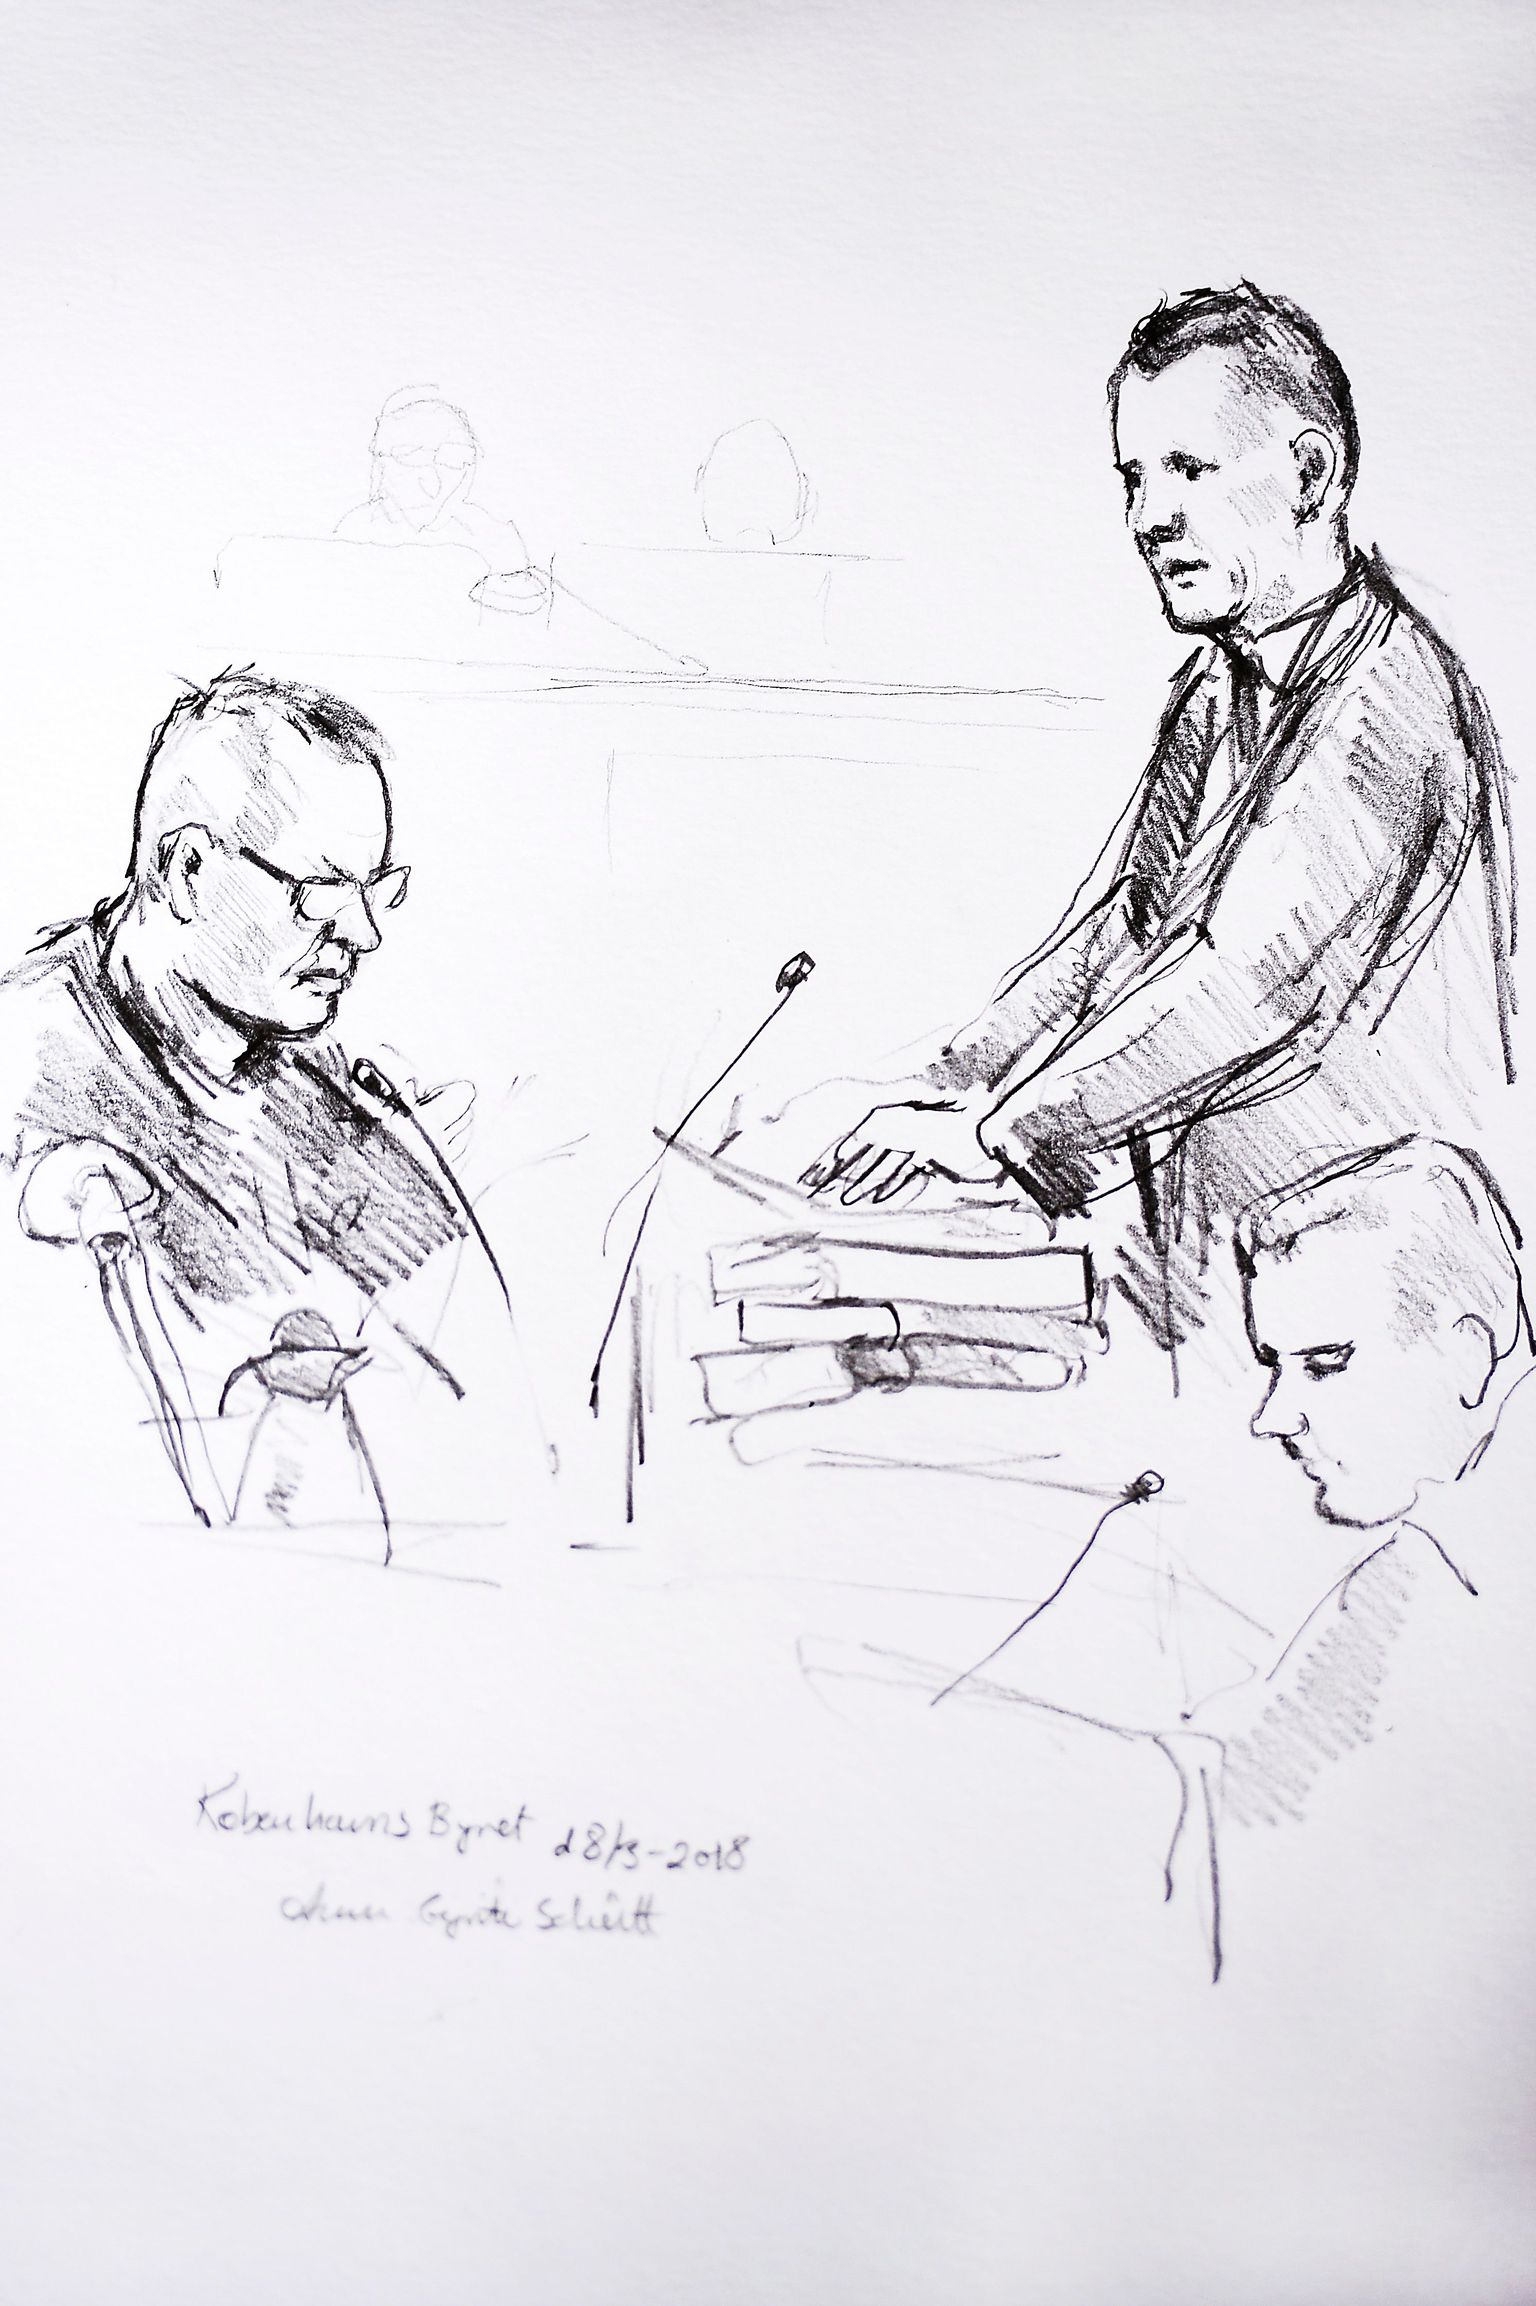 Kohtus tehtud joonistusel on kujutatud süüdistatavat leiutajat Peter Madsenit (vasakul) ning prokuröri Jakob Buch-Jepsenit (seisab) protsessi esimesel päeval Kopenhaageni kohtumajas.